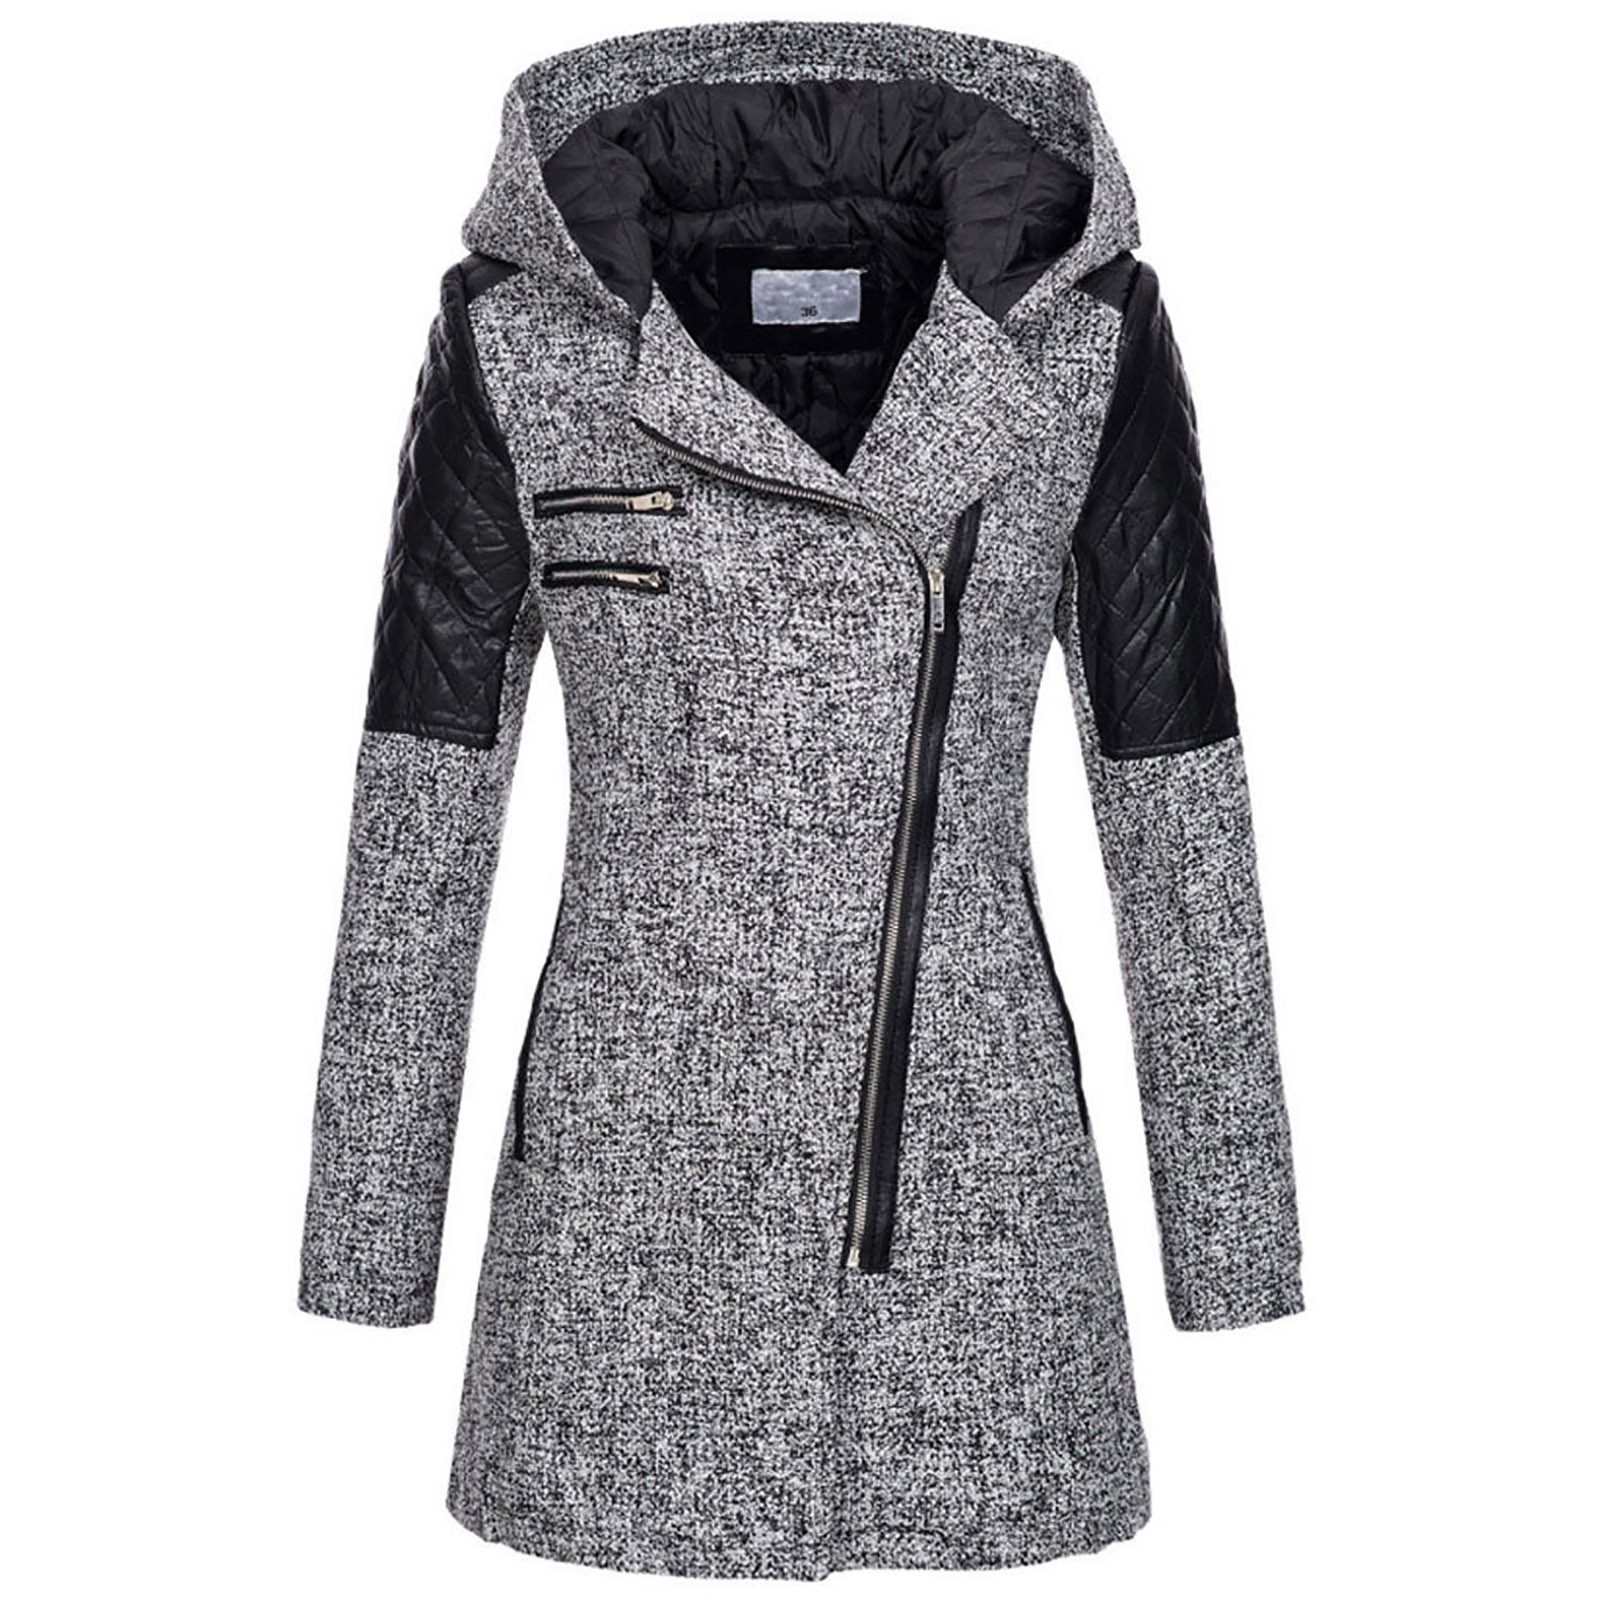 LAWOR Women Warm Slim Jacket Thick Overcoat Winter Outwear Hooded ...